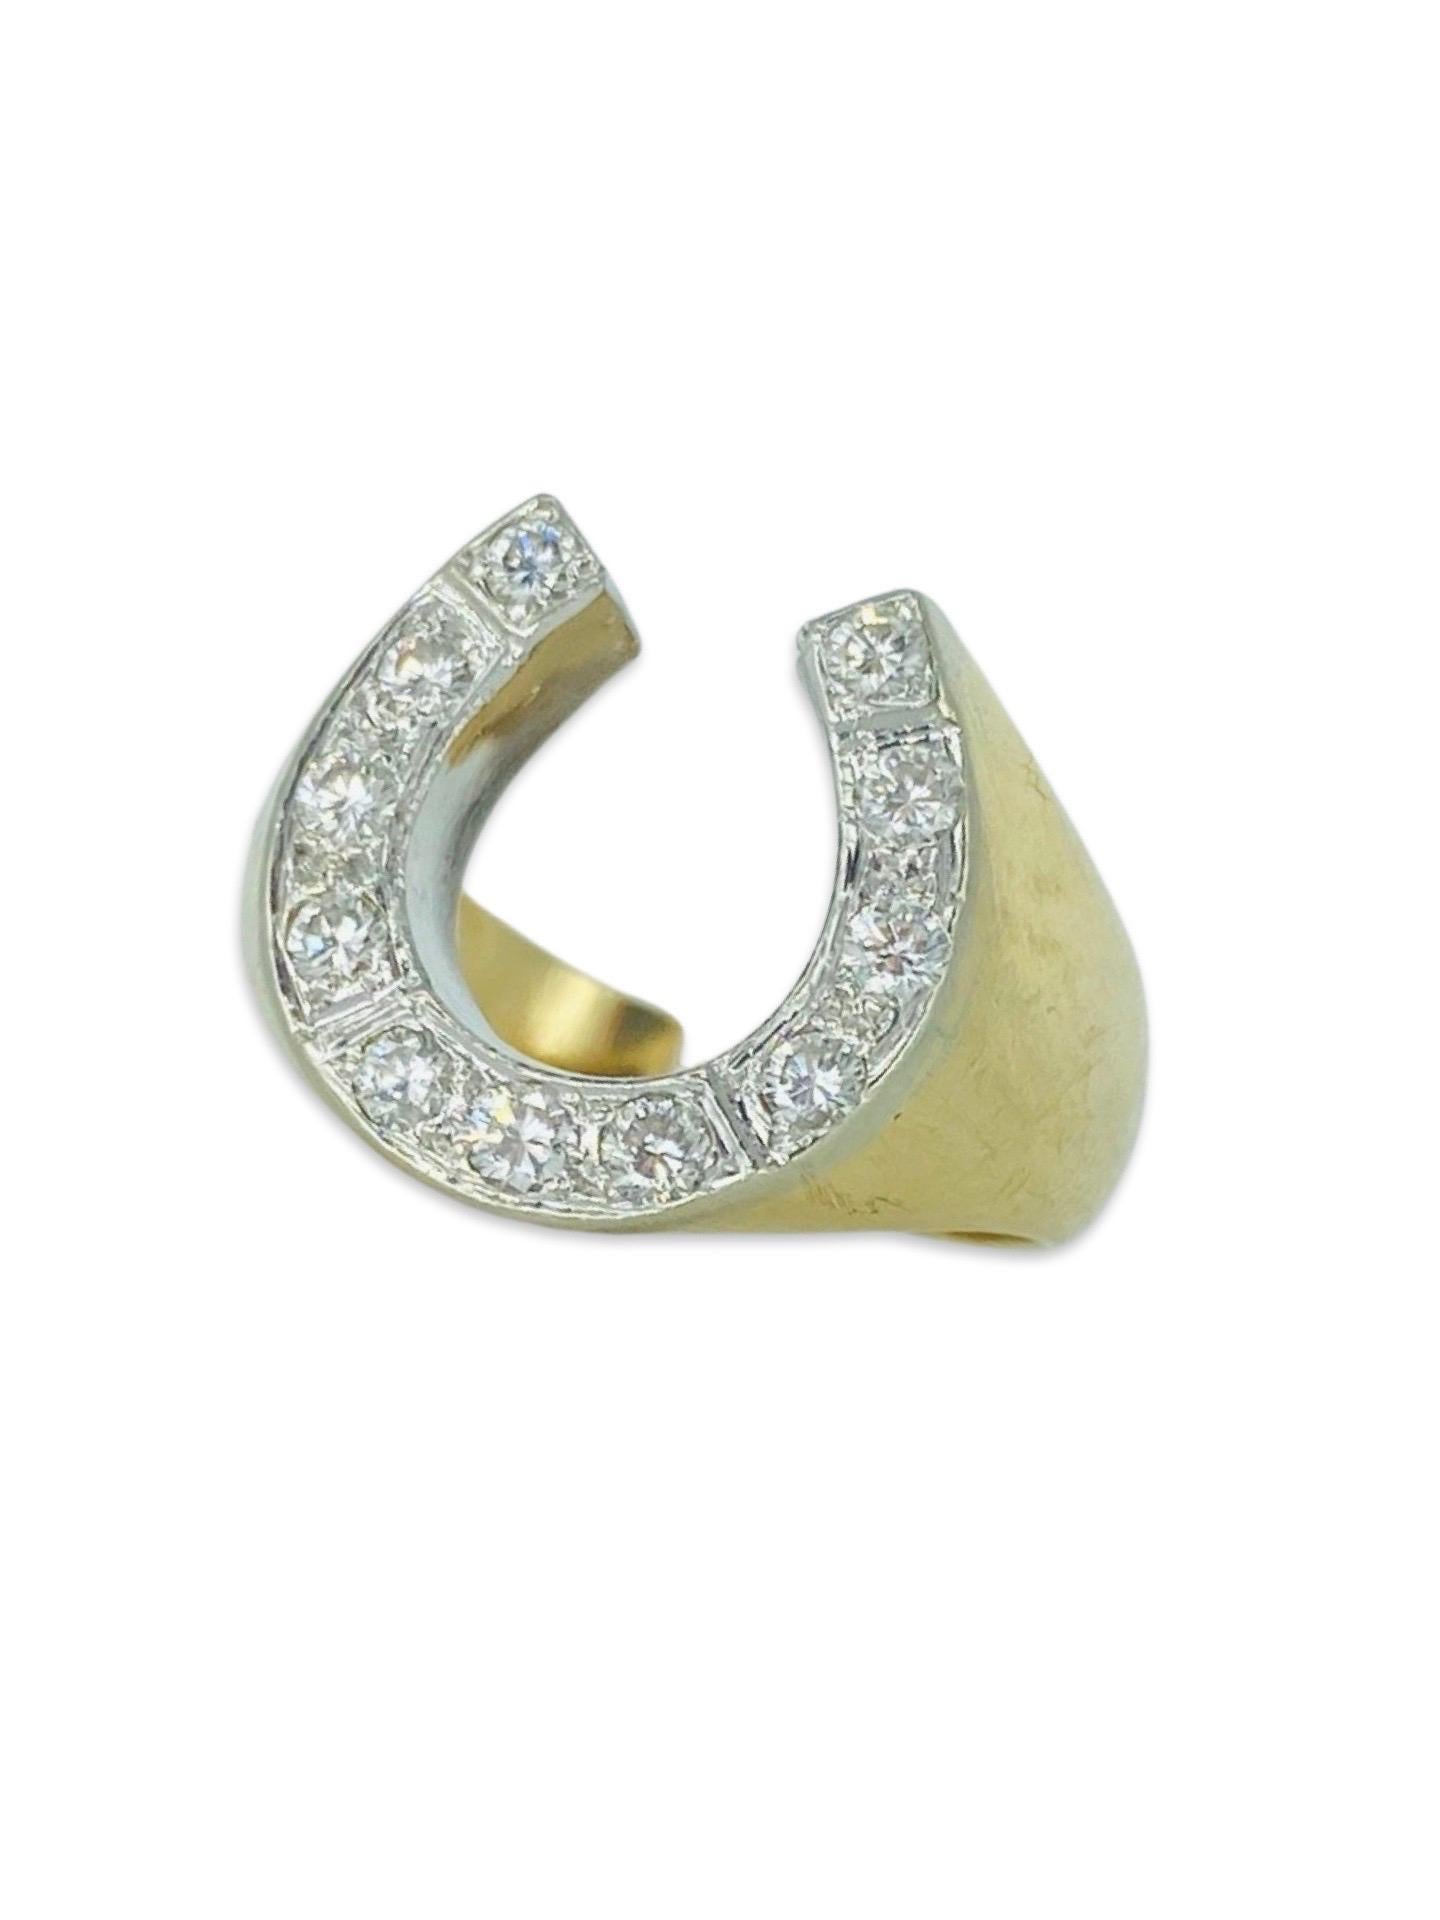 Vintage 0,66 Karat Diamanten Lucky Hufeisenring 14k Gold
Diamanten insgesamt: 11
Natürliche Diamanten H/SI1
Ringgröße: 9
Gewichte: 9.6g
Schwerer, hochwertig gefertigter Ring, ikonischer Vintage 